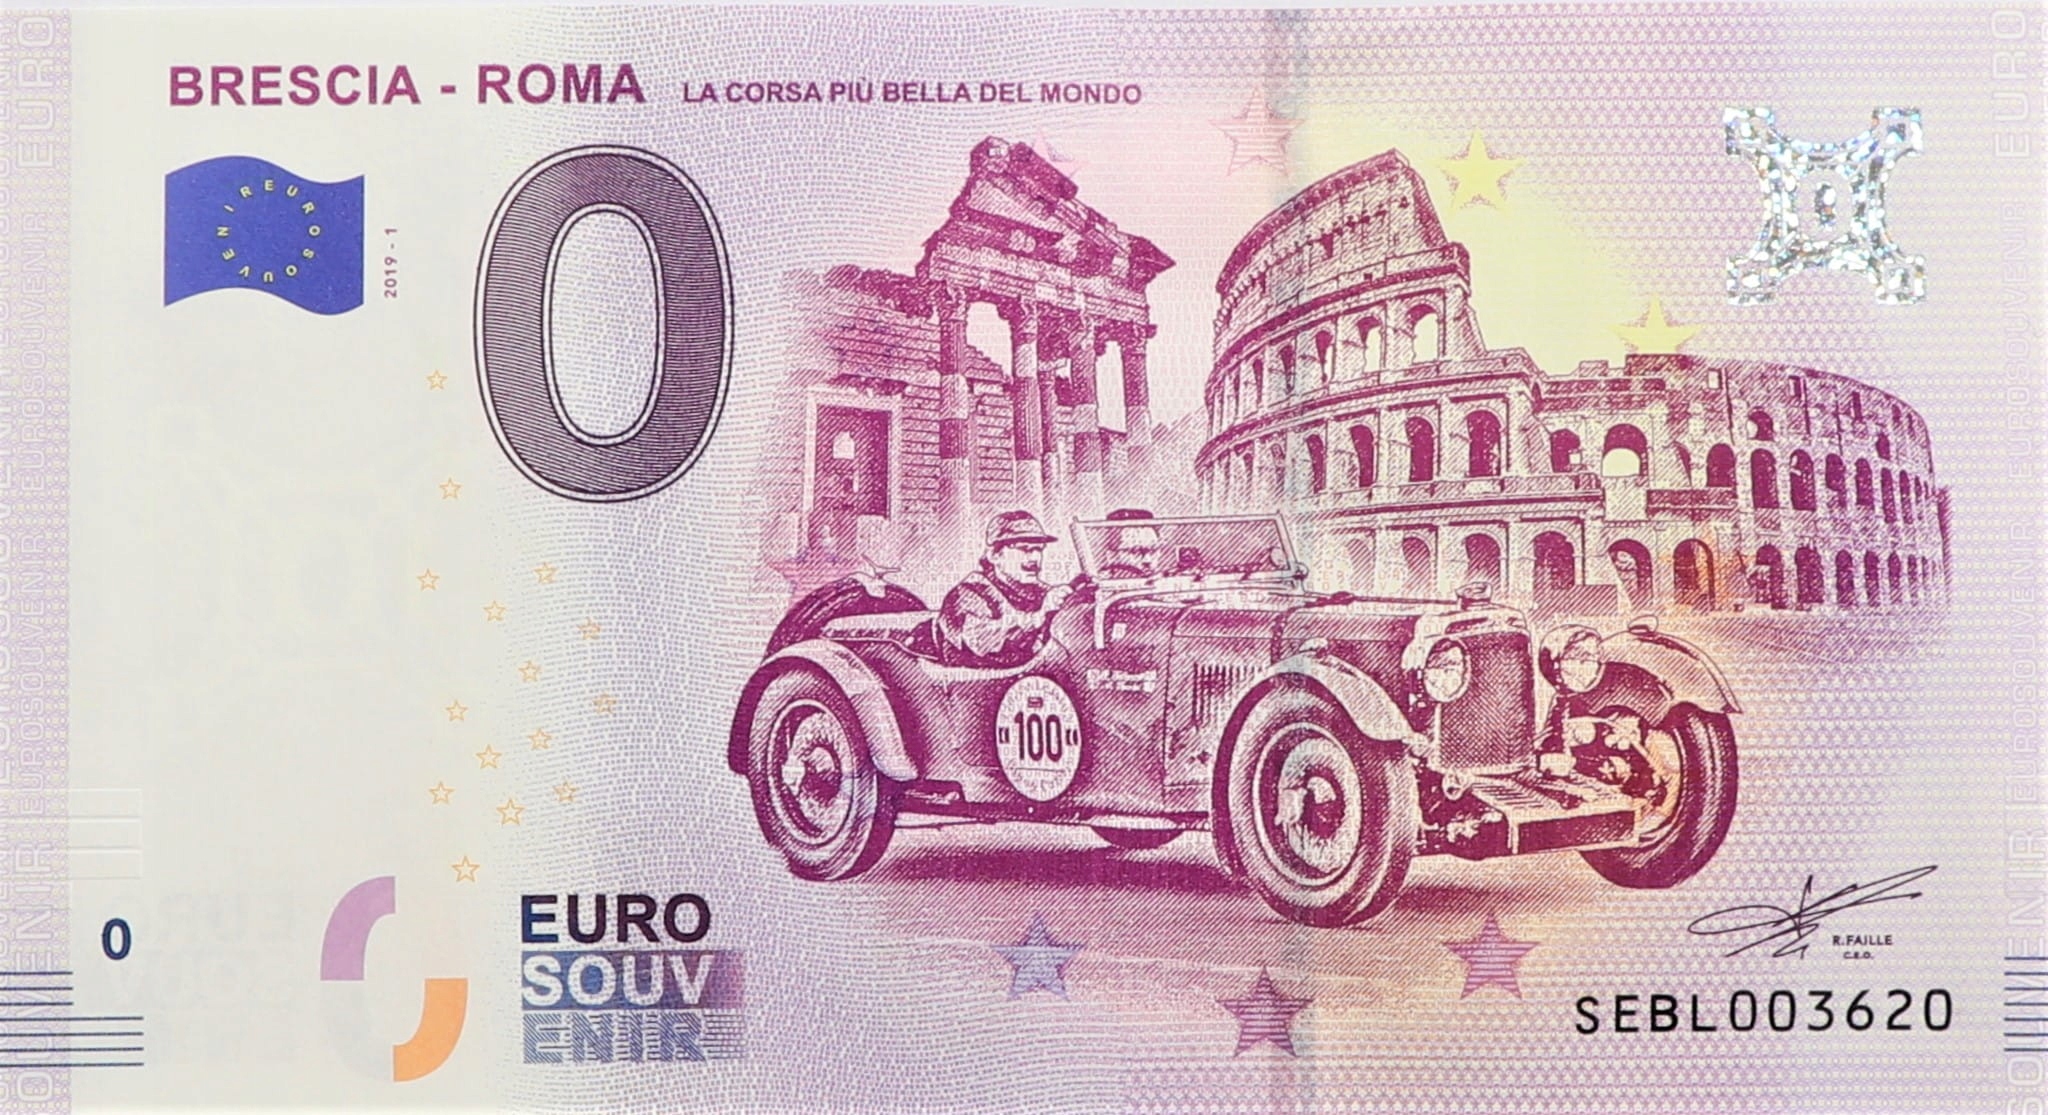 3 000 евро. Итальянские купюры. Деньги Италии до евро. Банкнота 0 евро футбол. Итальянская валюта до евро.